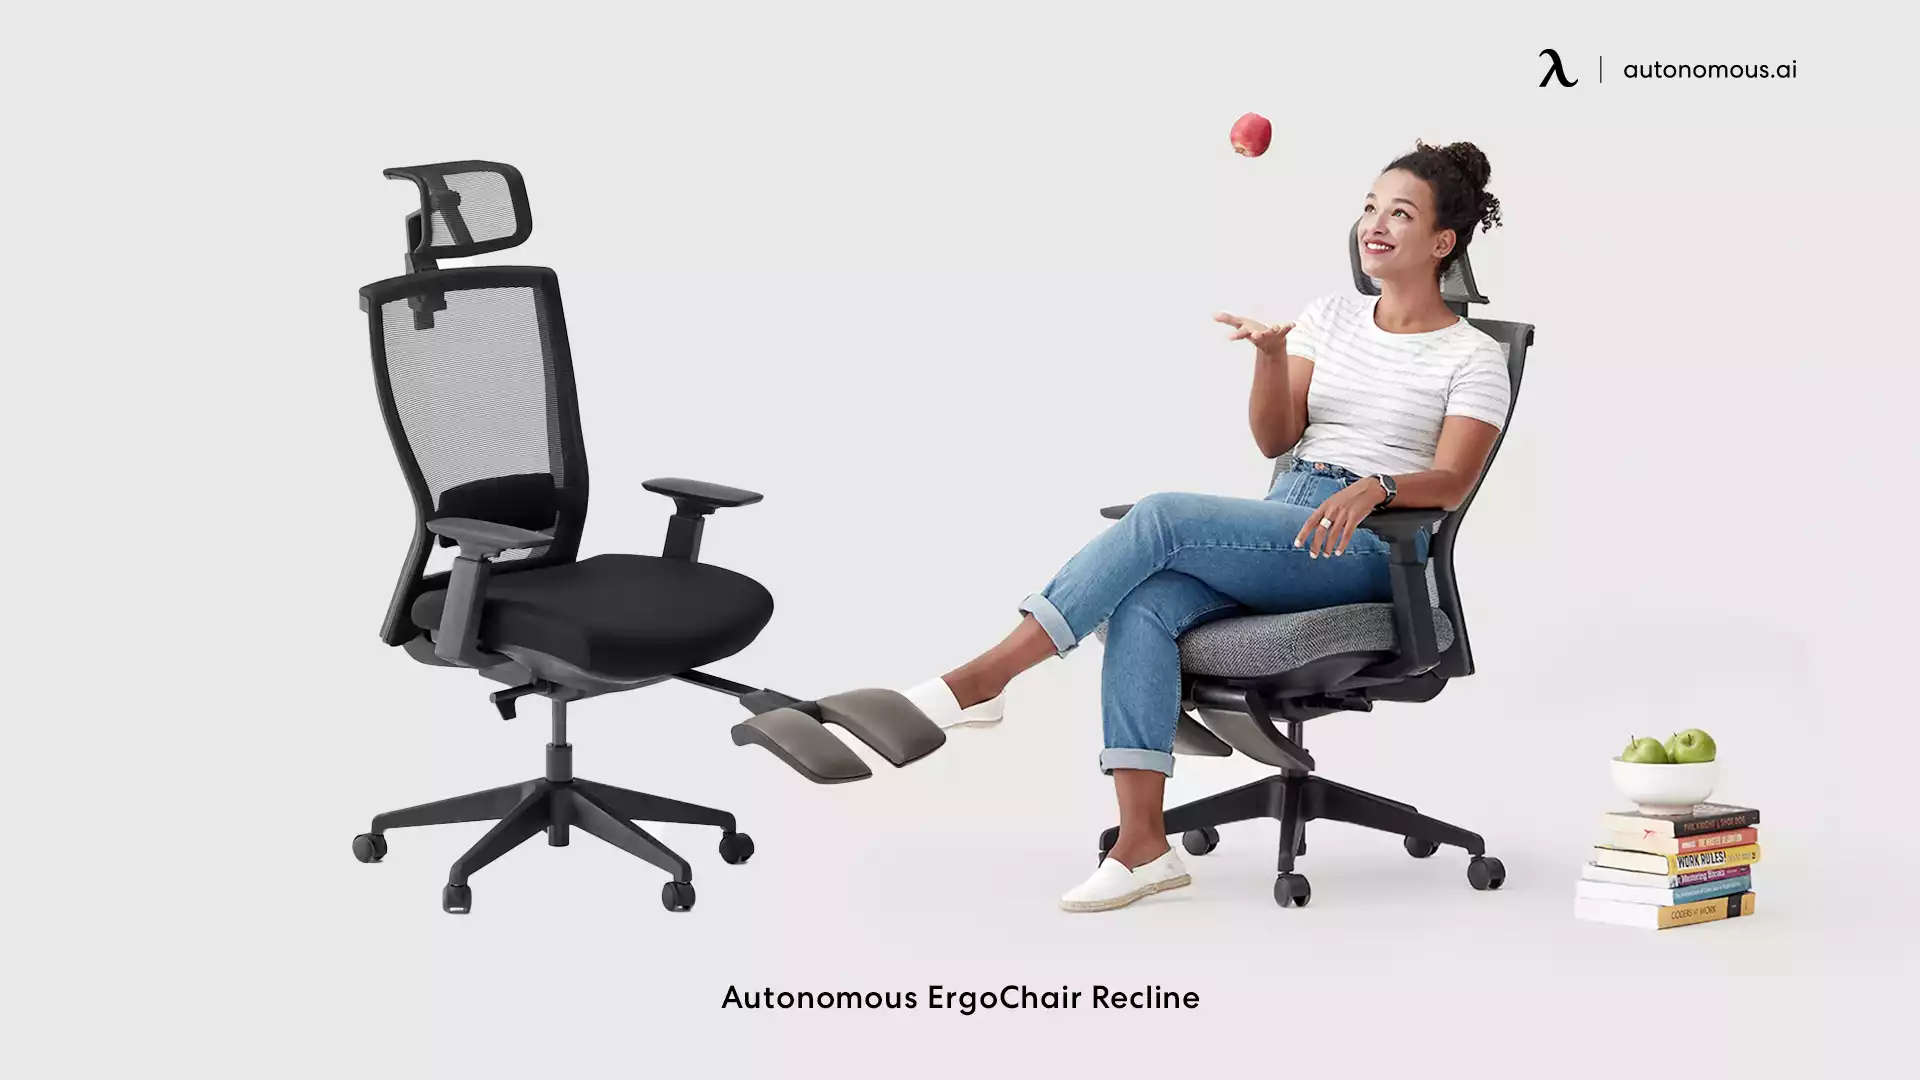 Autonomous ErgoChair Recline mesh office chair